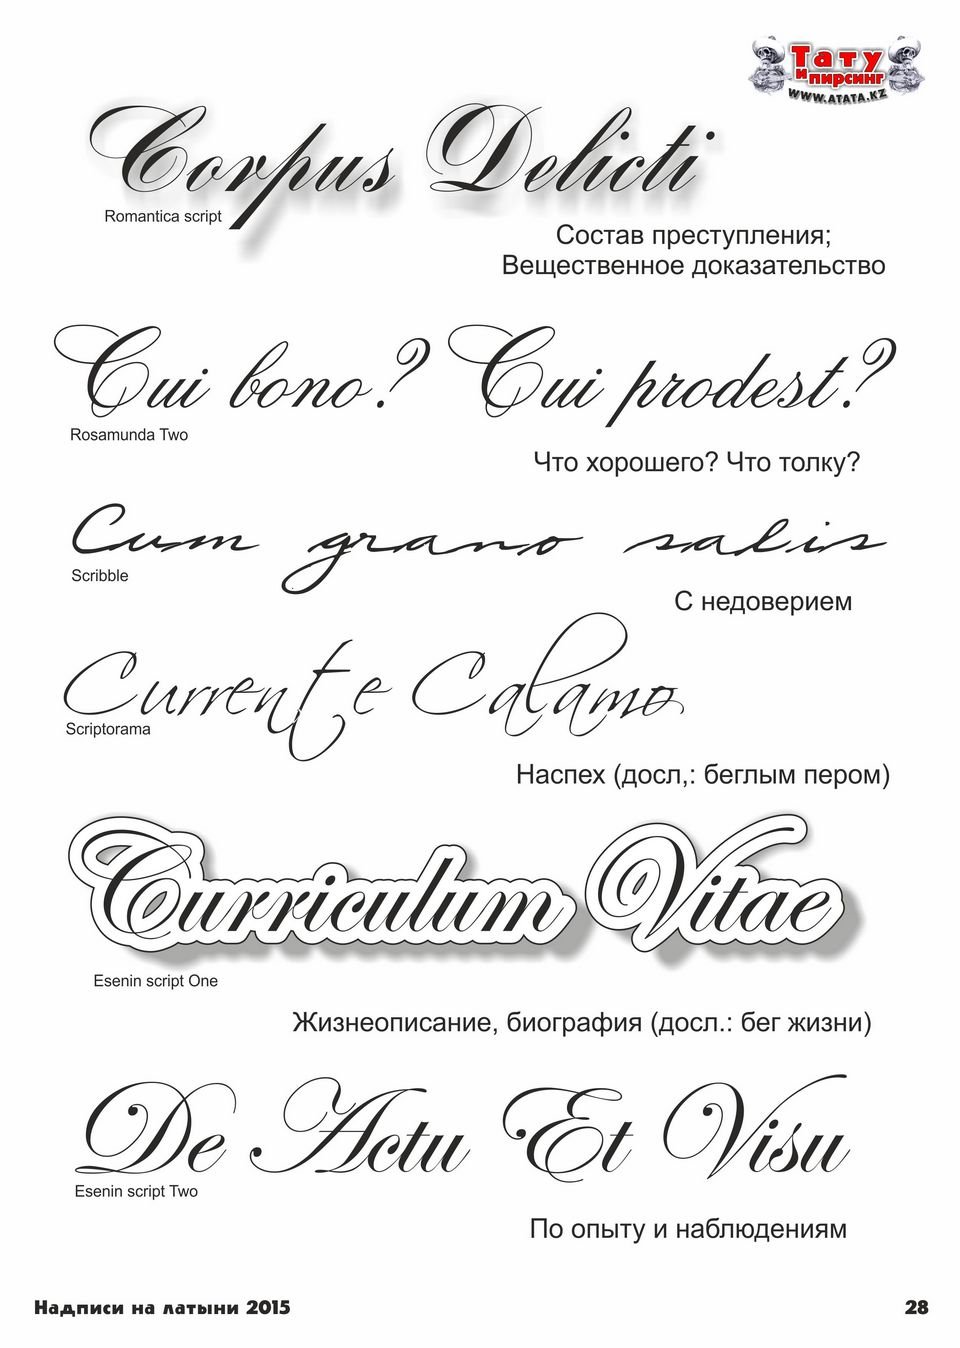 Надписи татуировок - на латыни с переводом. Перевод татуировок на латинский язык | centerforstrategy.ru | Дзен